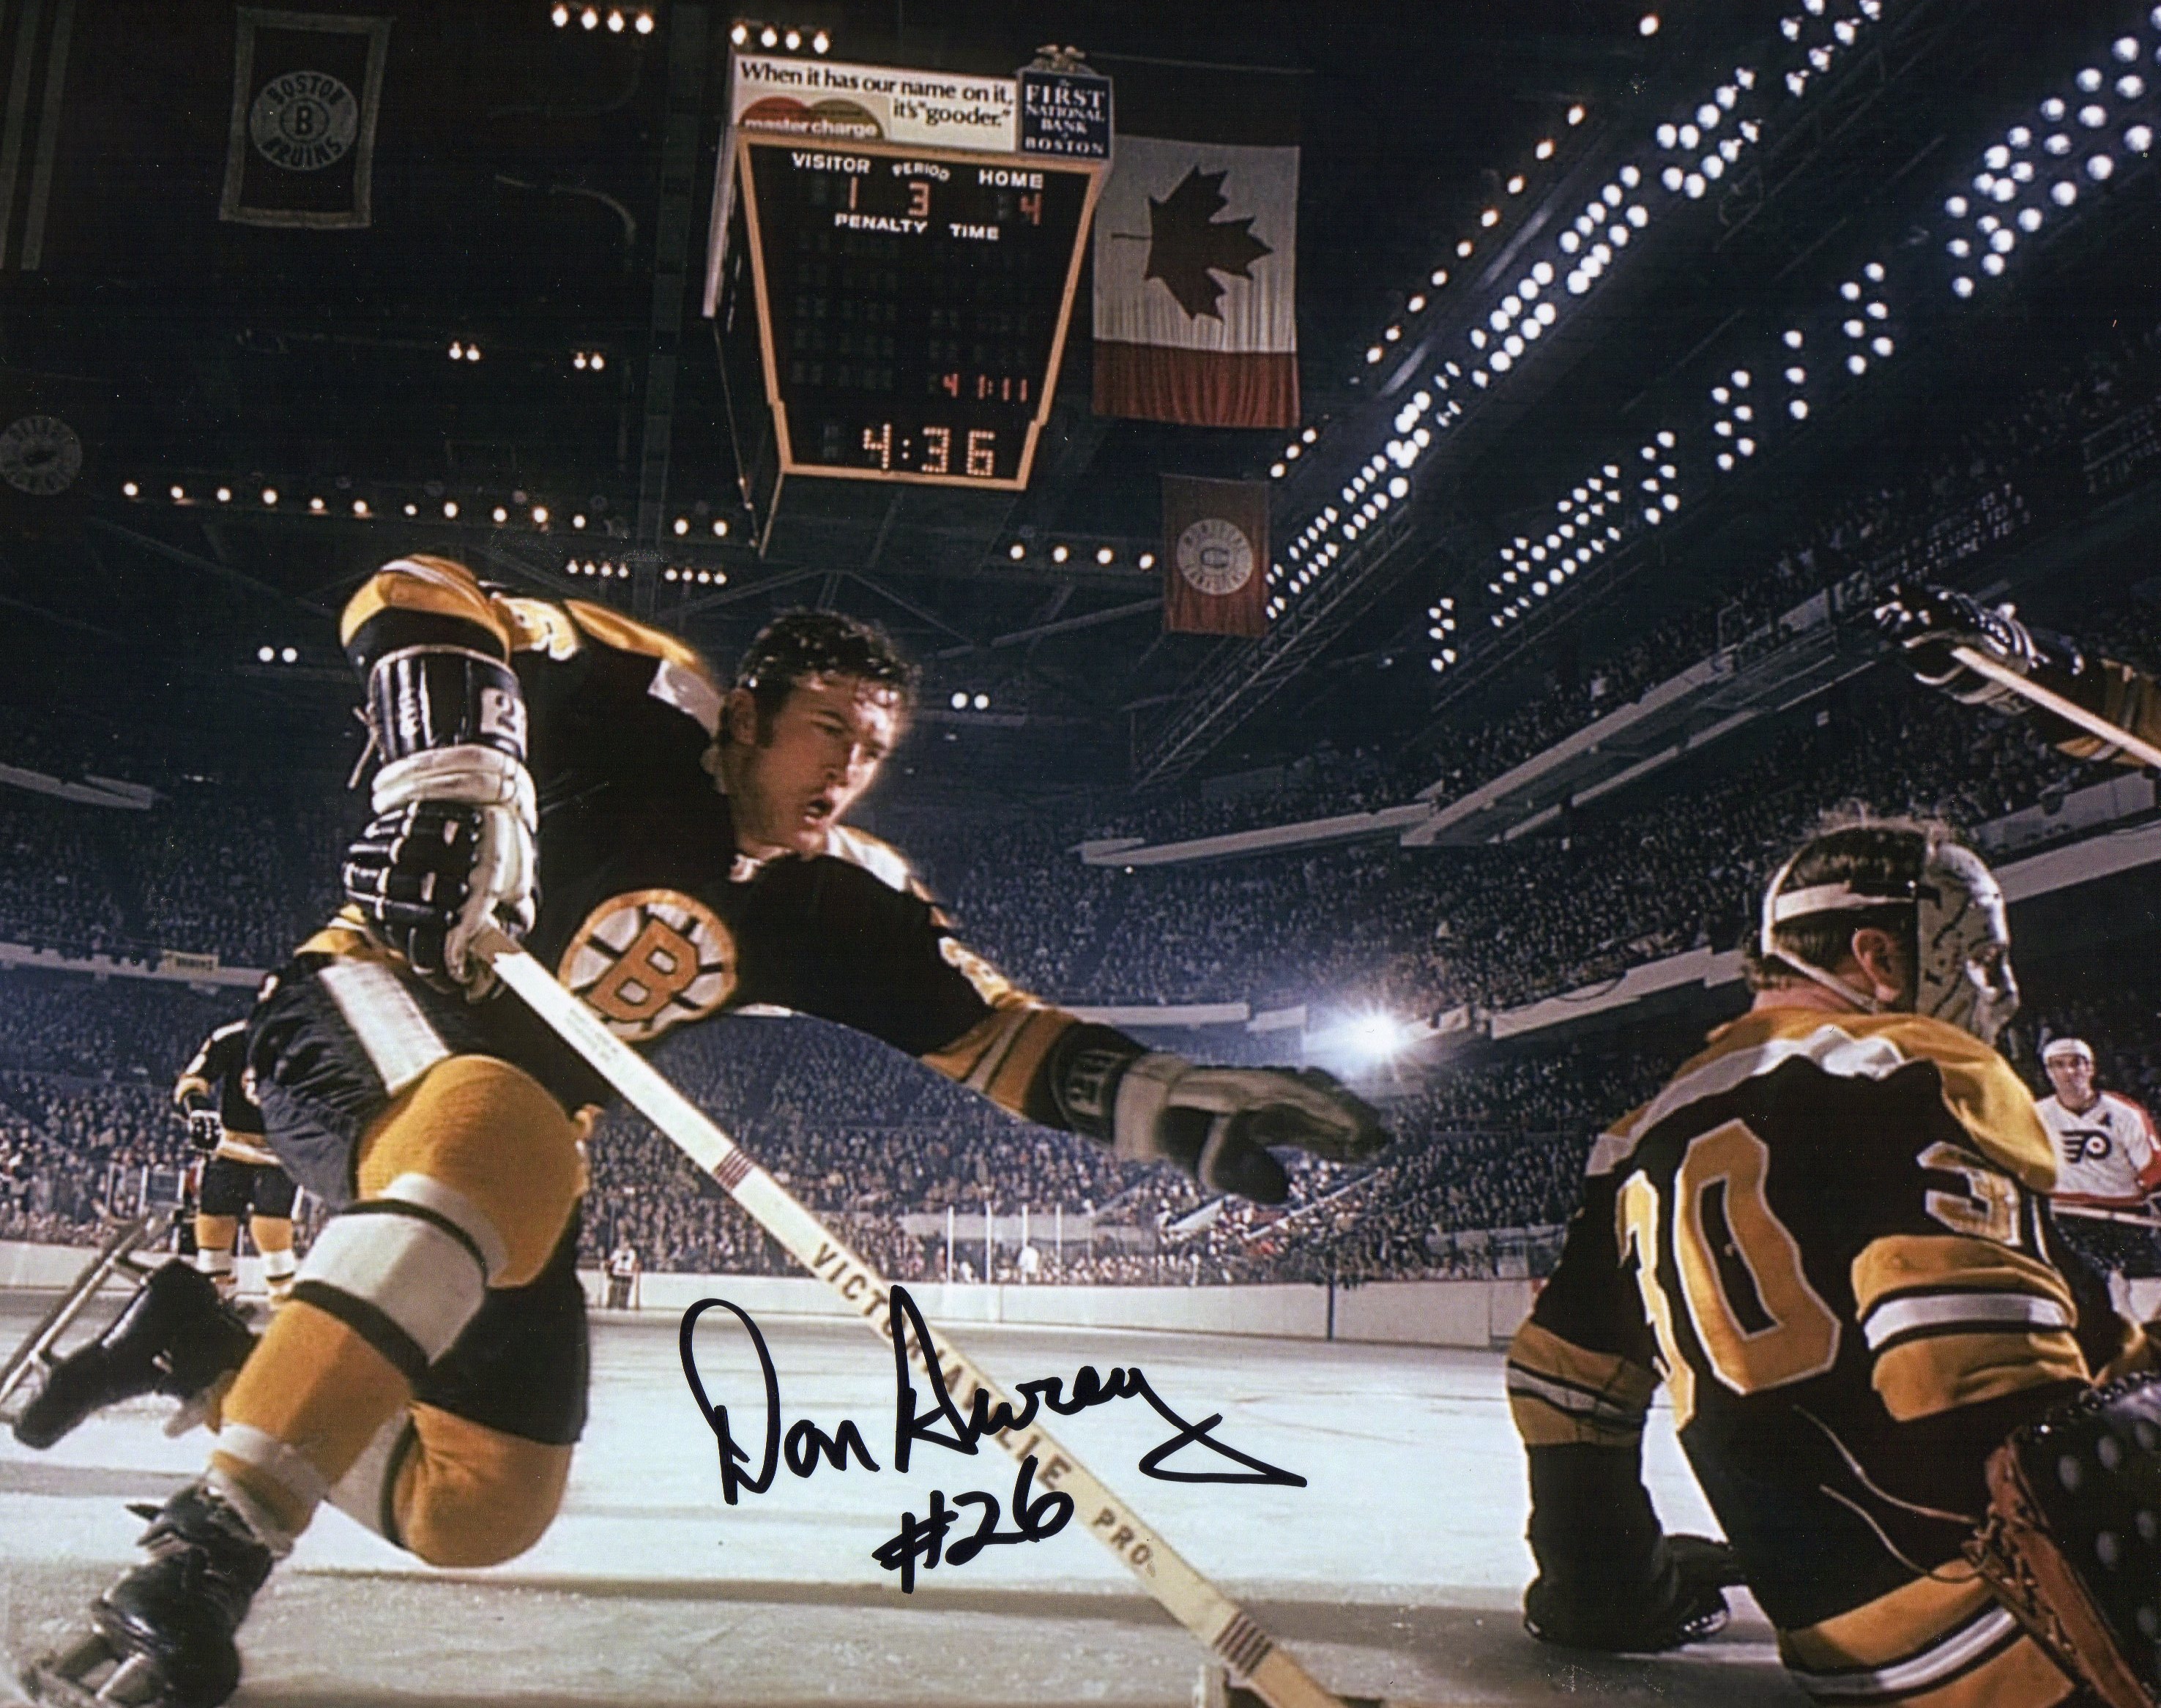 Don Awrey Autograph 8x10 Color photo Boston Bruins